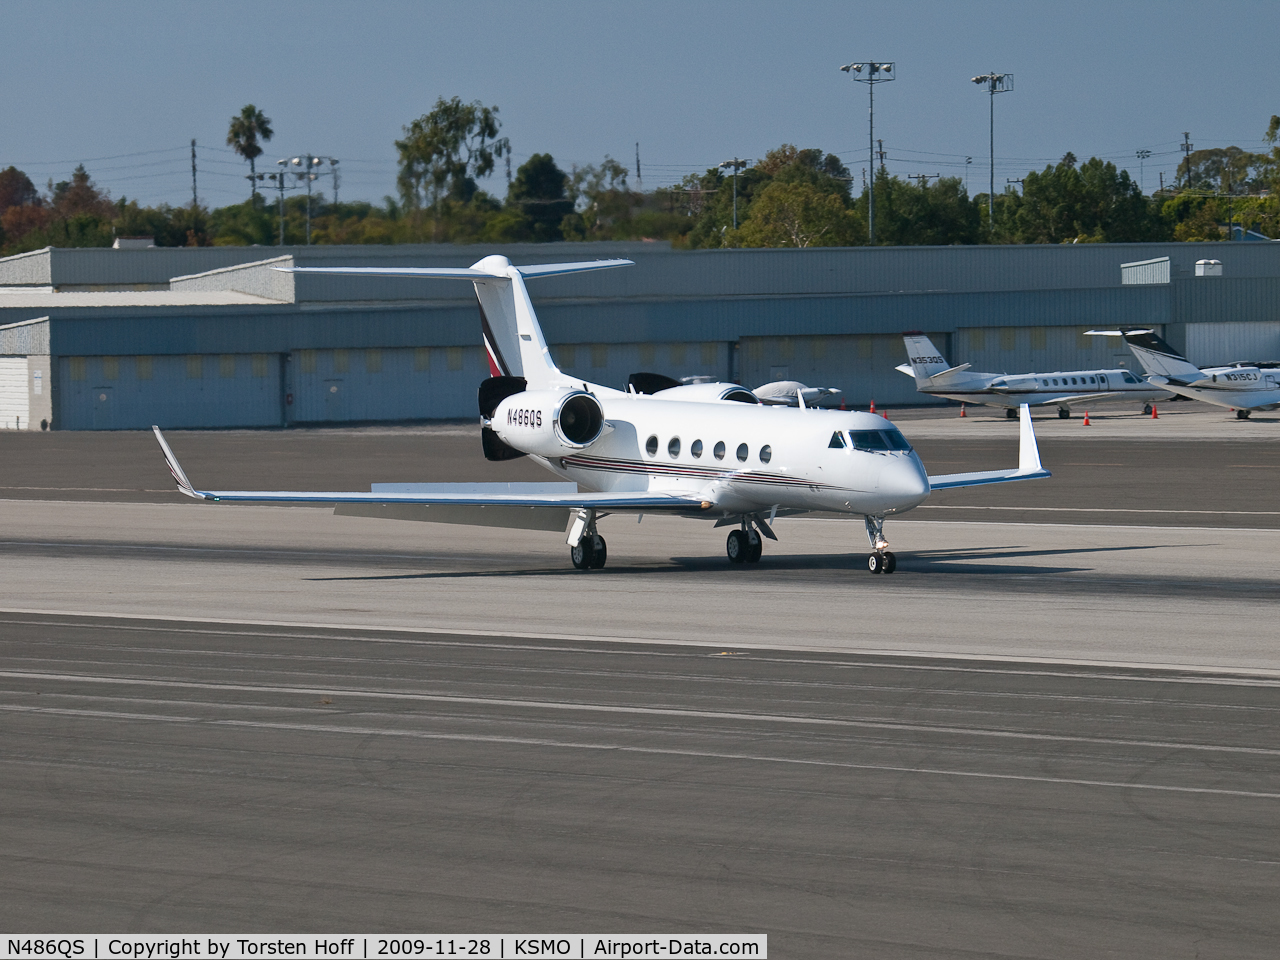 N486QS, 1999 Gulfstream Aerospace G-IV C/N 1386, N486QS arriving on RWY 03